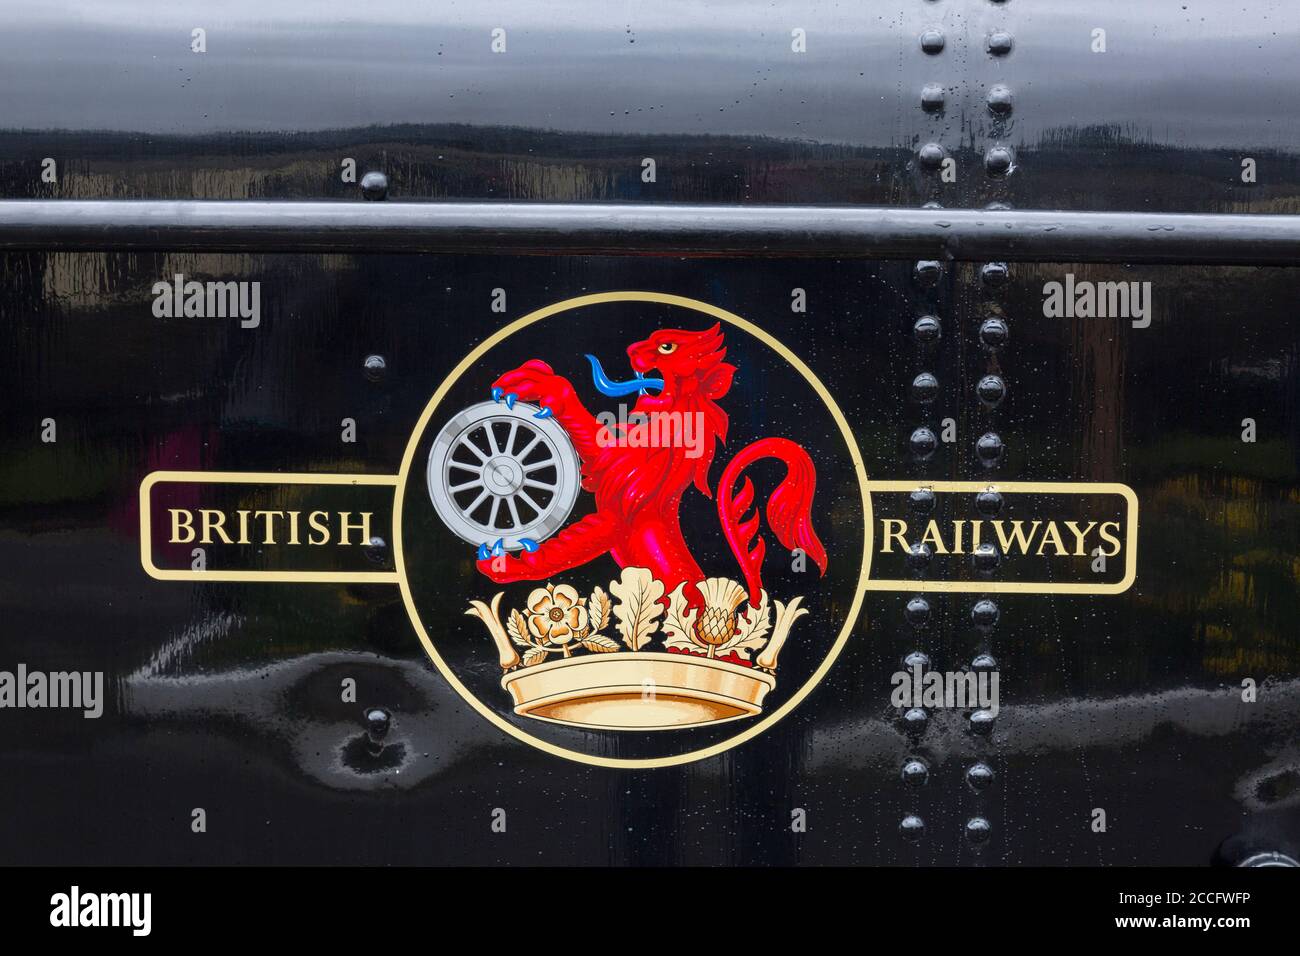 Un des premiers chemins de fer britanniques cime sur ex-GWR 0-6-0 réservoir de vapeur de valise loco 7714 à la gare de Minehead, West Somerset Railway Spring Gala, Angleterre, Royaume-Uni Banque D'Images